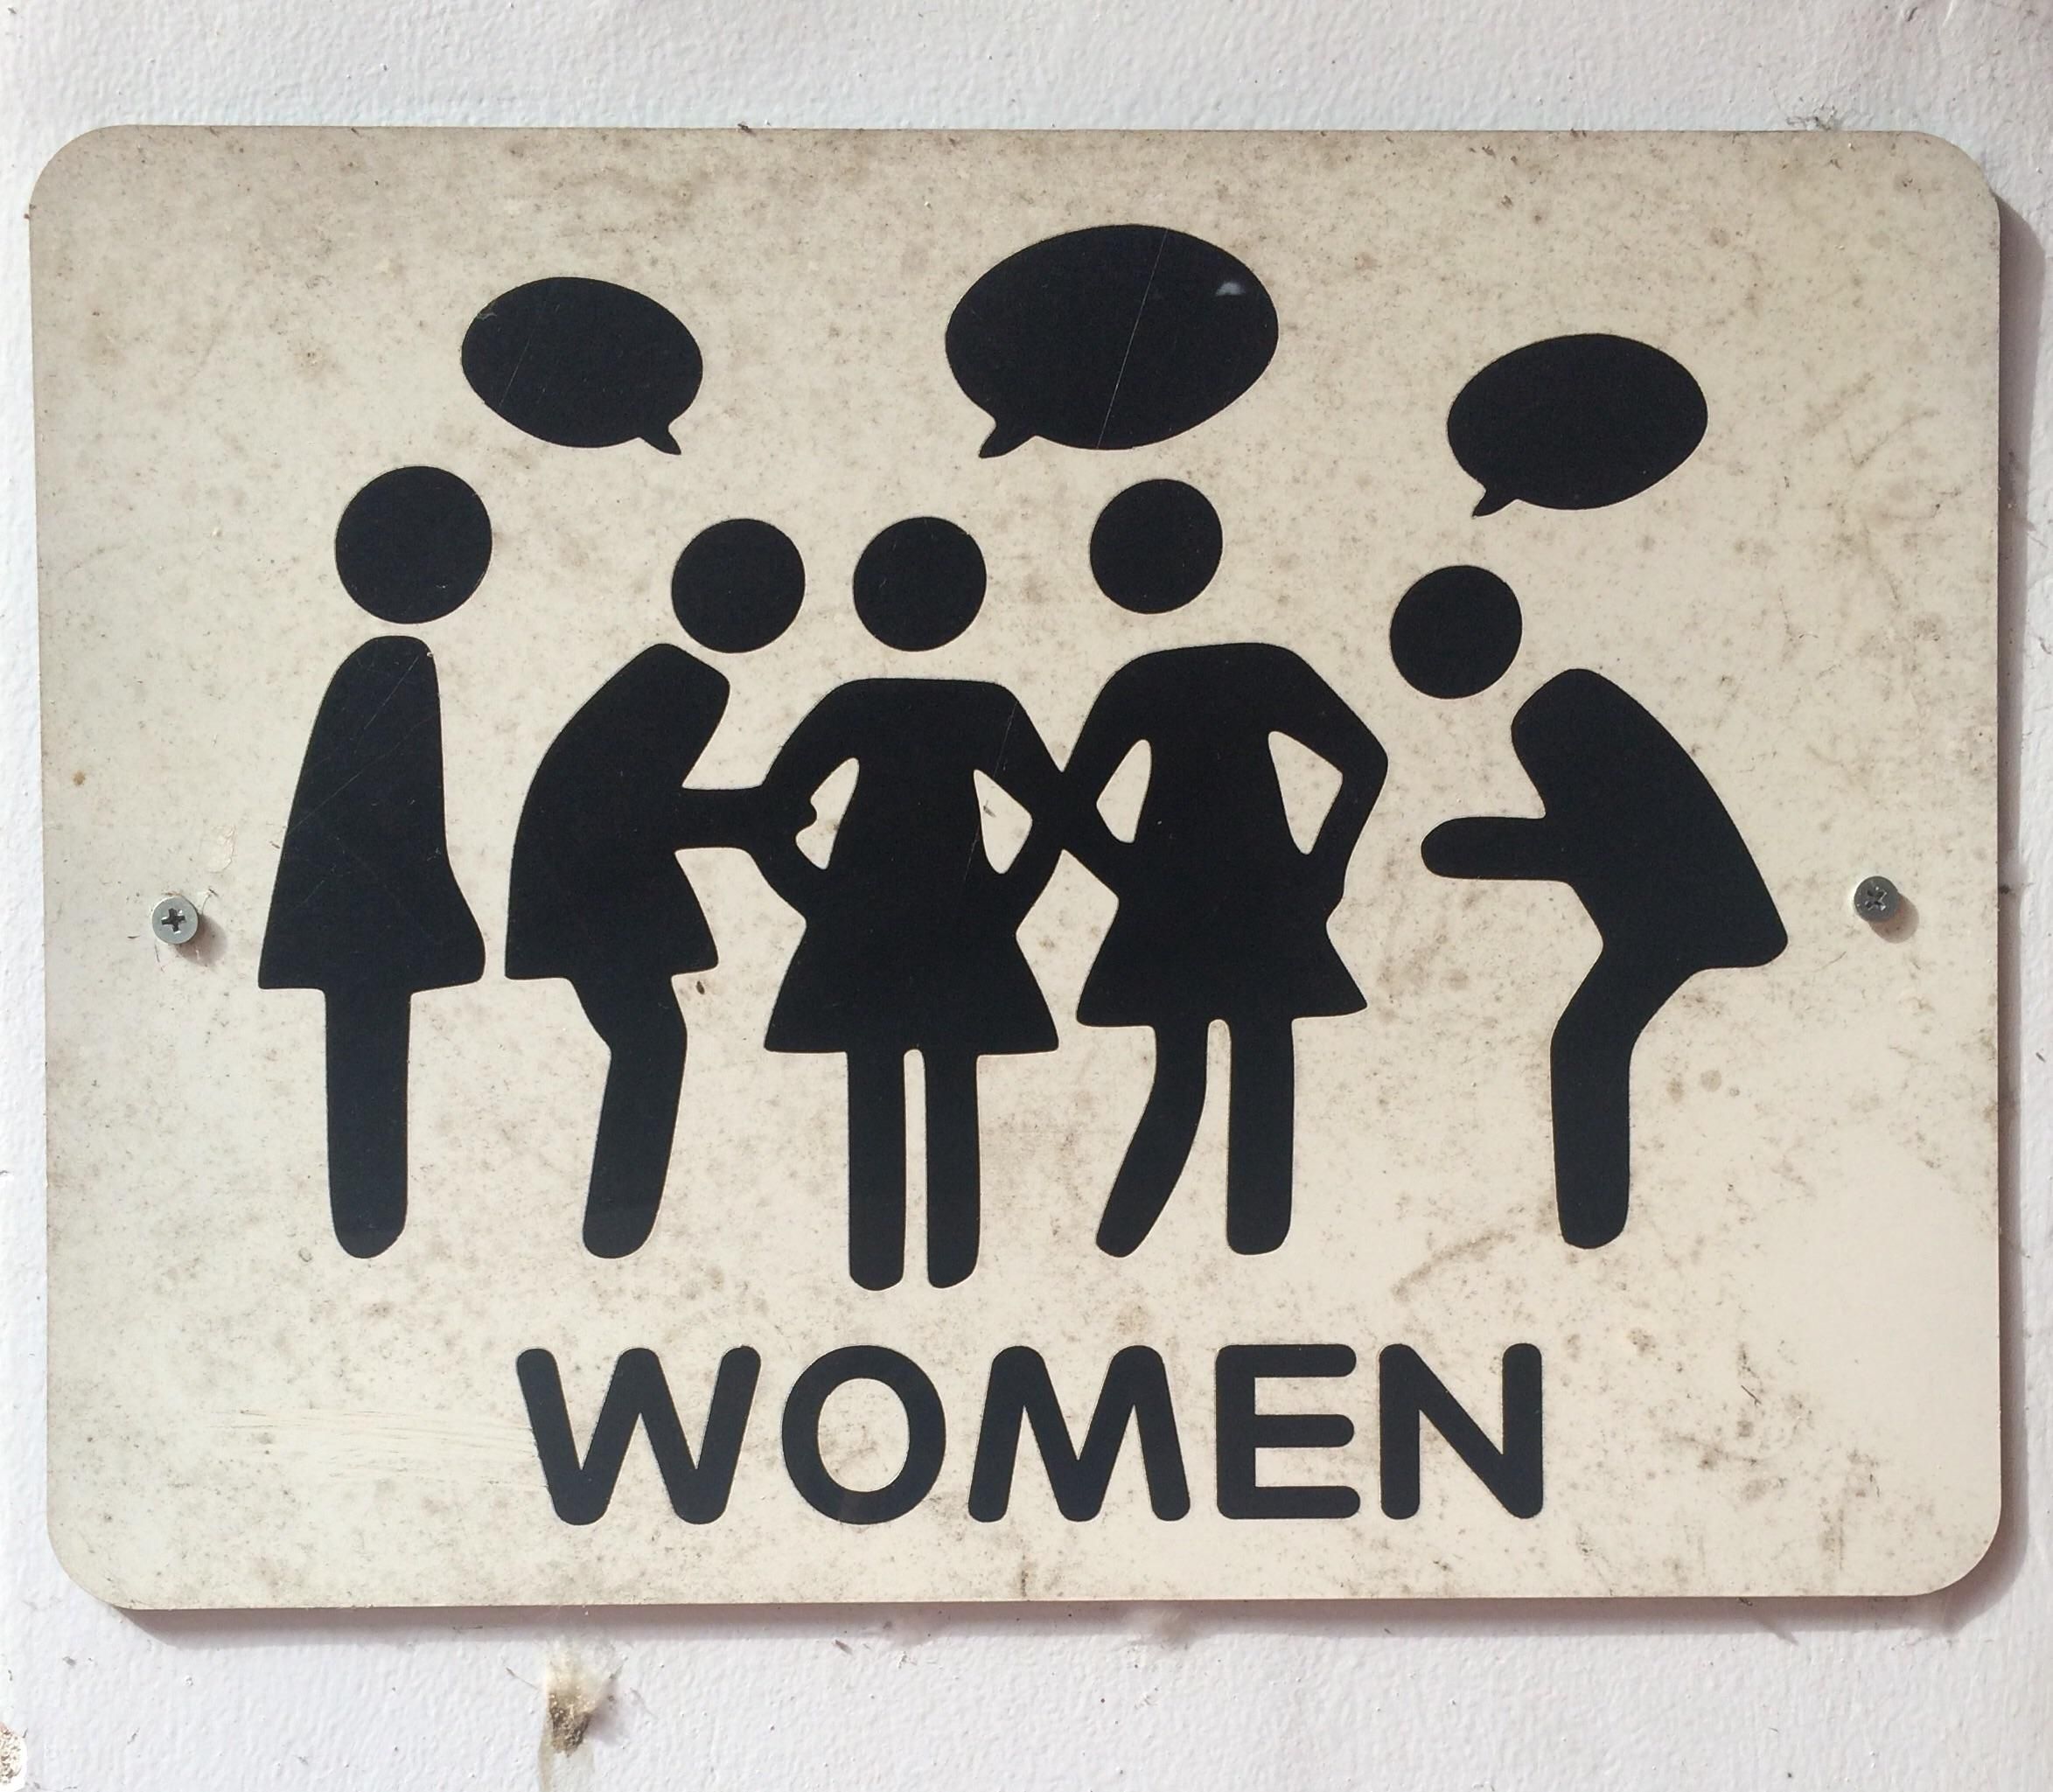 Women's bathroom sign in Vietnam